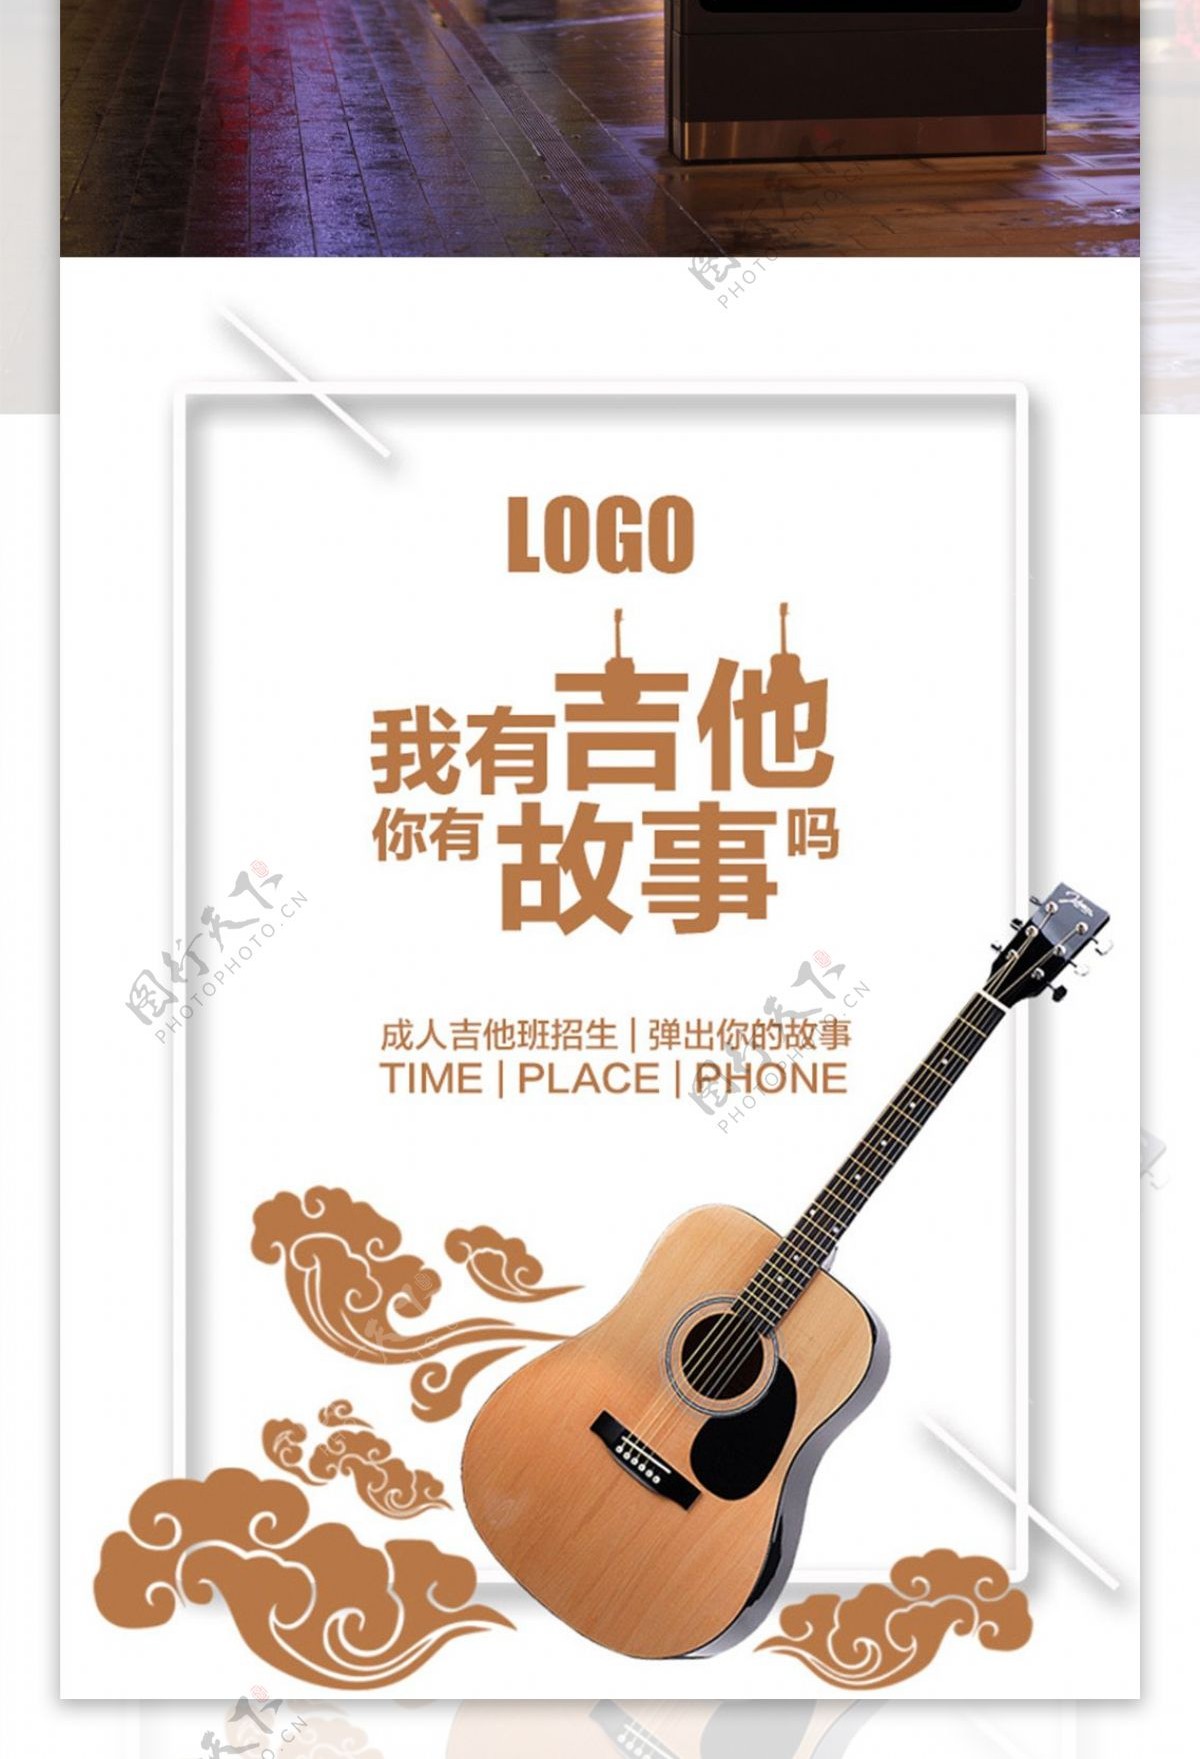 极简主义吉他创意招生海报